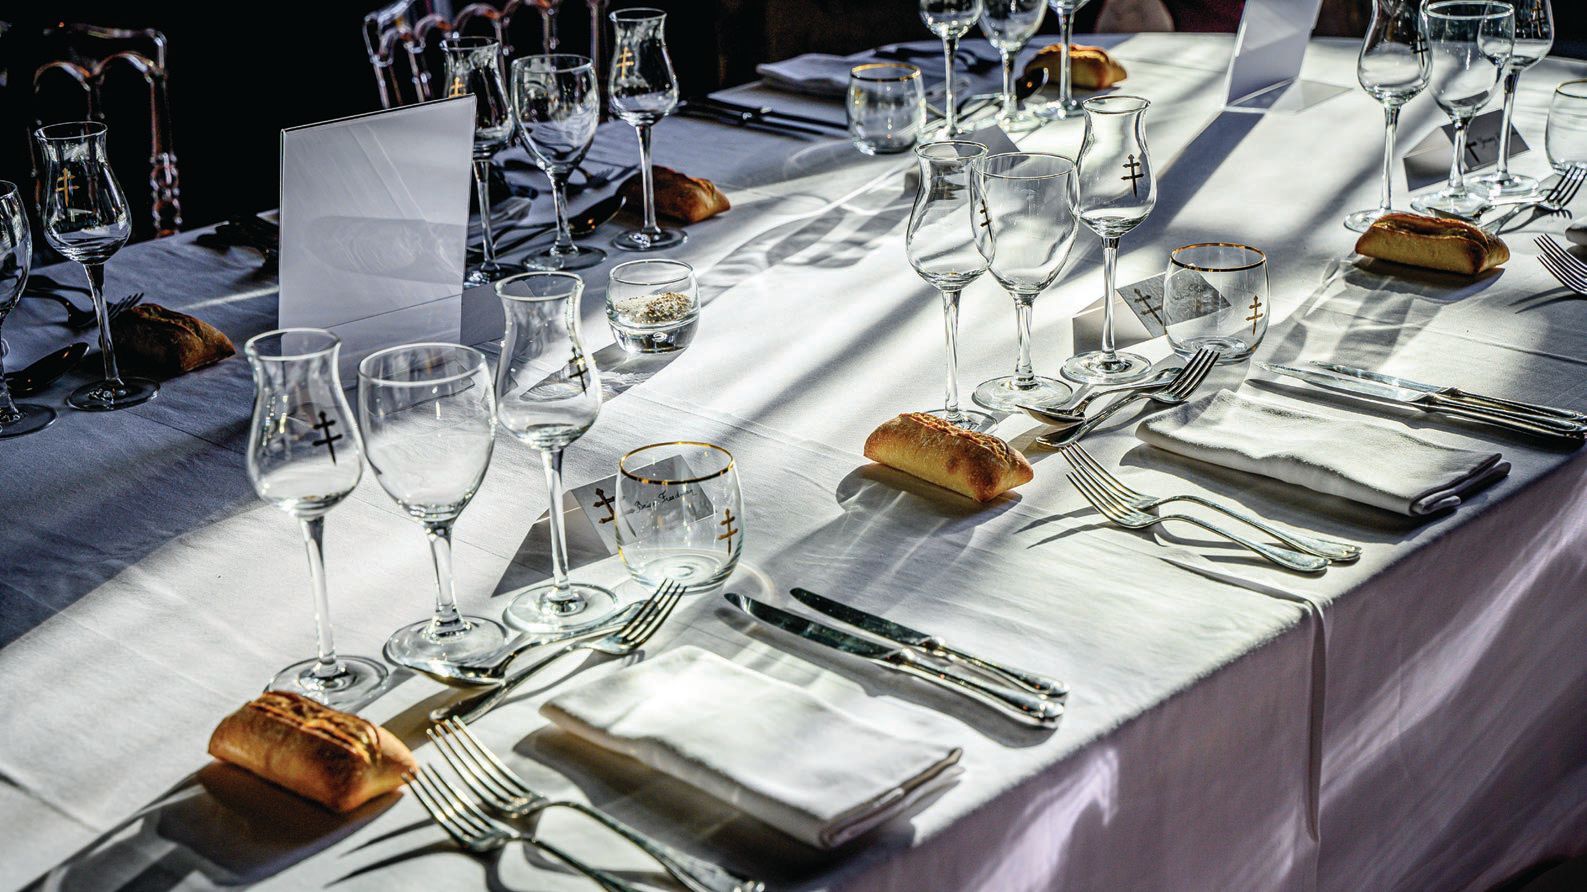 The D’USSÉ-hosted dinner at Château du Cognac PHOTO BY CHRISTOPHE MARIOT FOR D’USSÉ